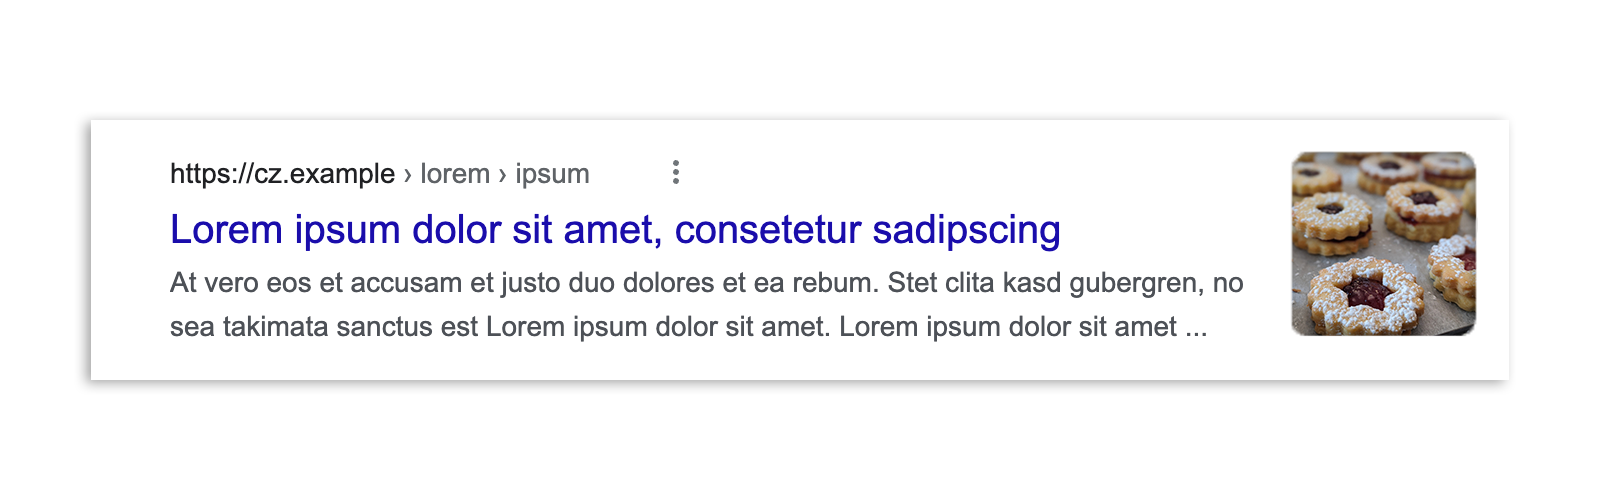 Wynik wyszukiwania Google w Czechach przed wprowadzeniem przepisów, który zawiera fragment artykułu, podgląd obrazu, nagłówek i adres URL.